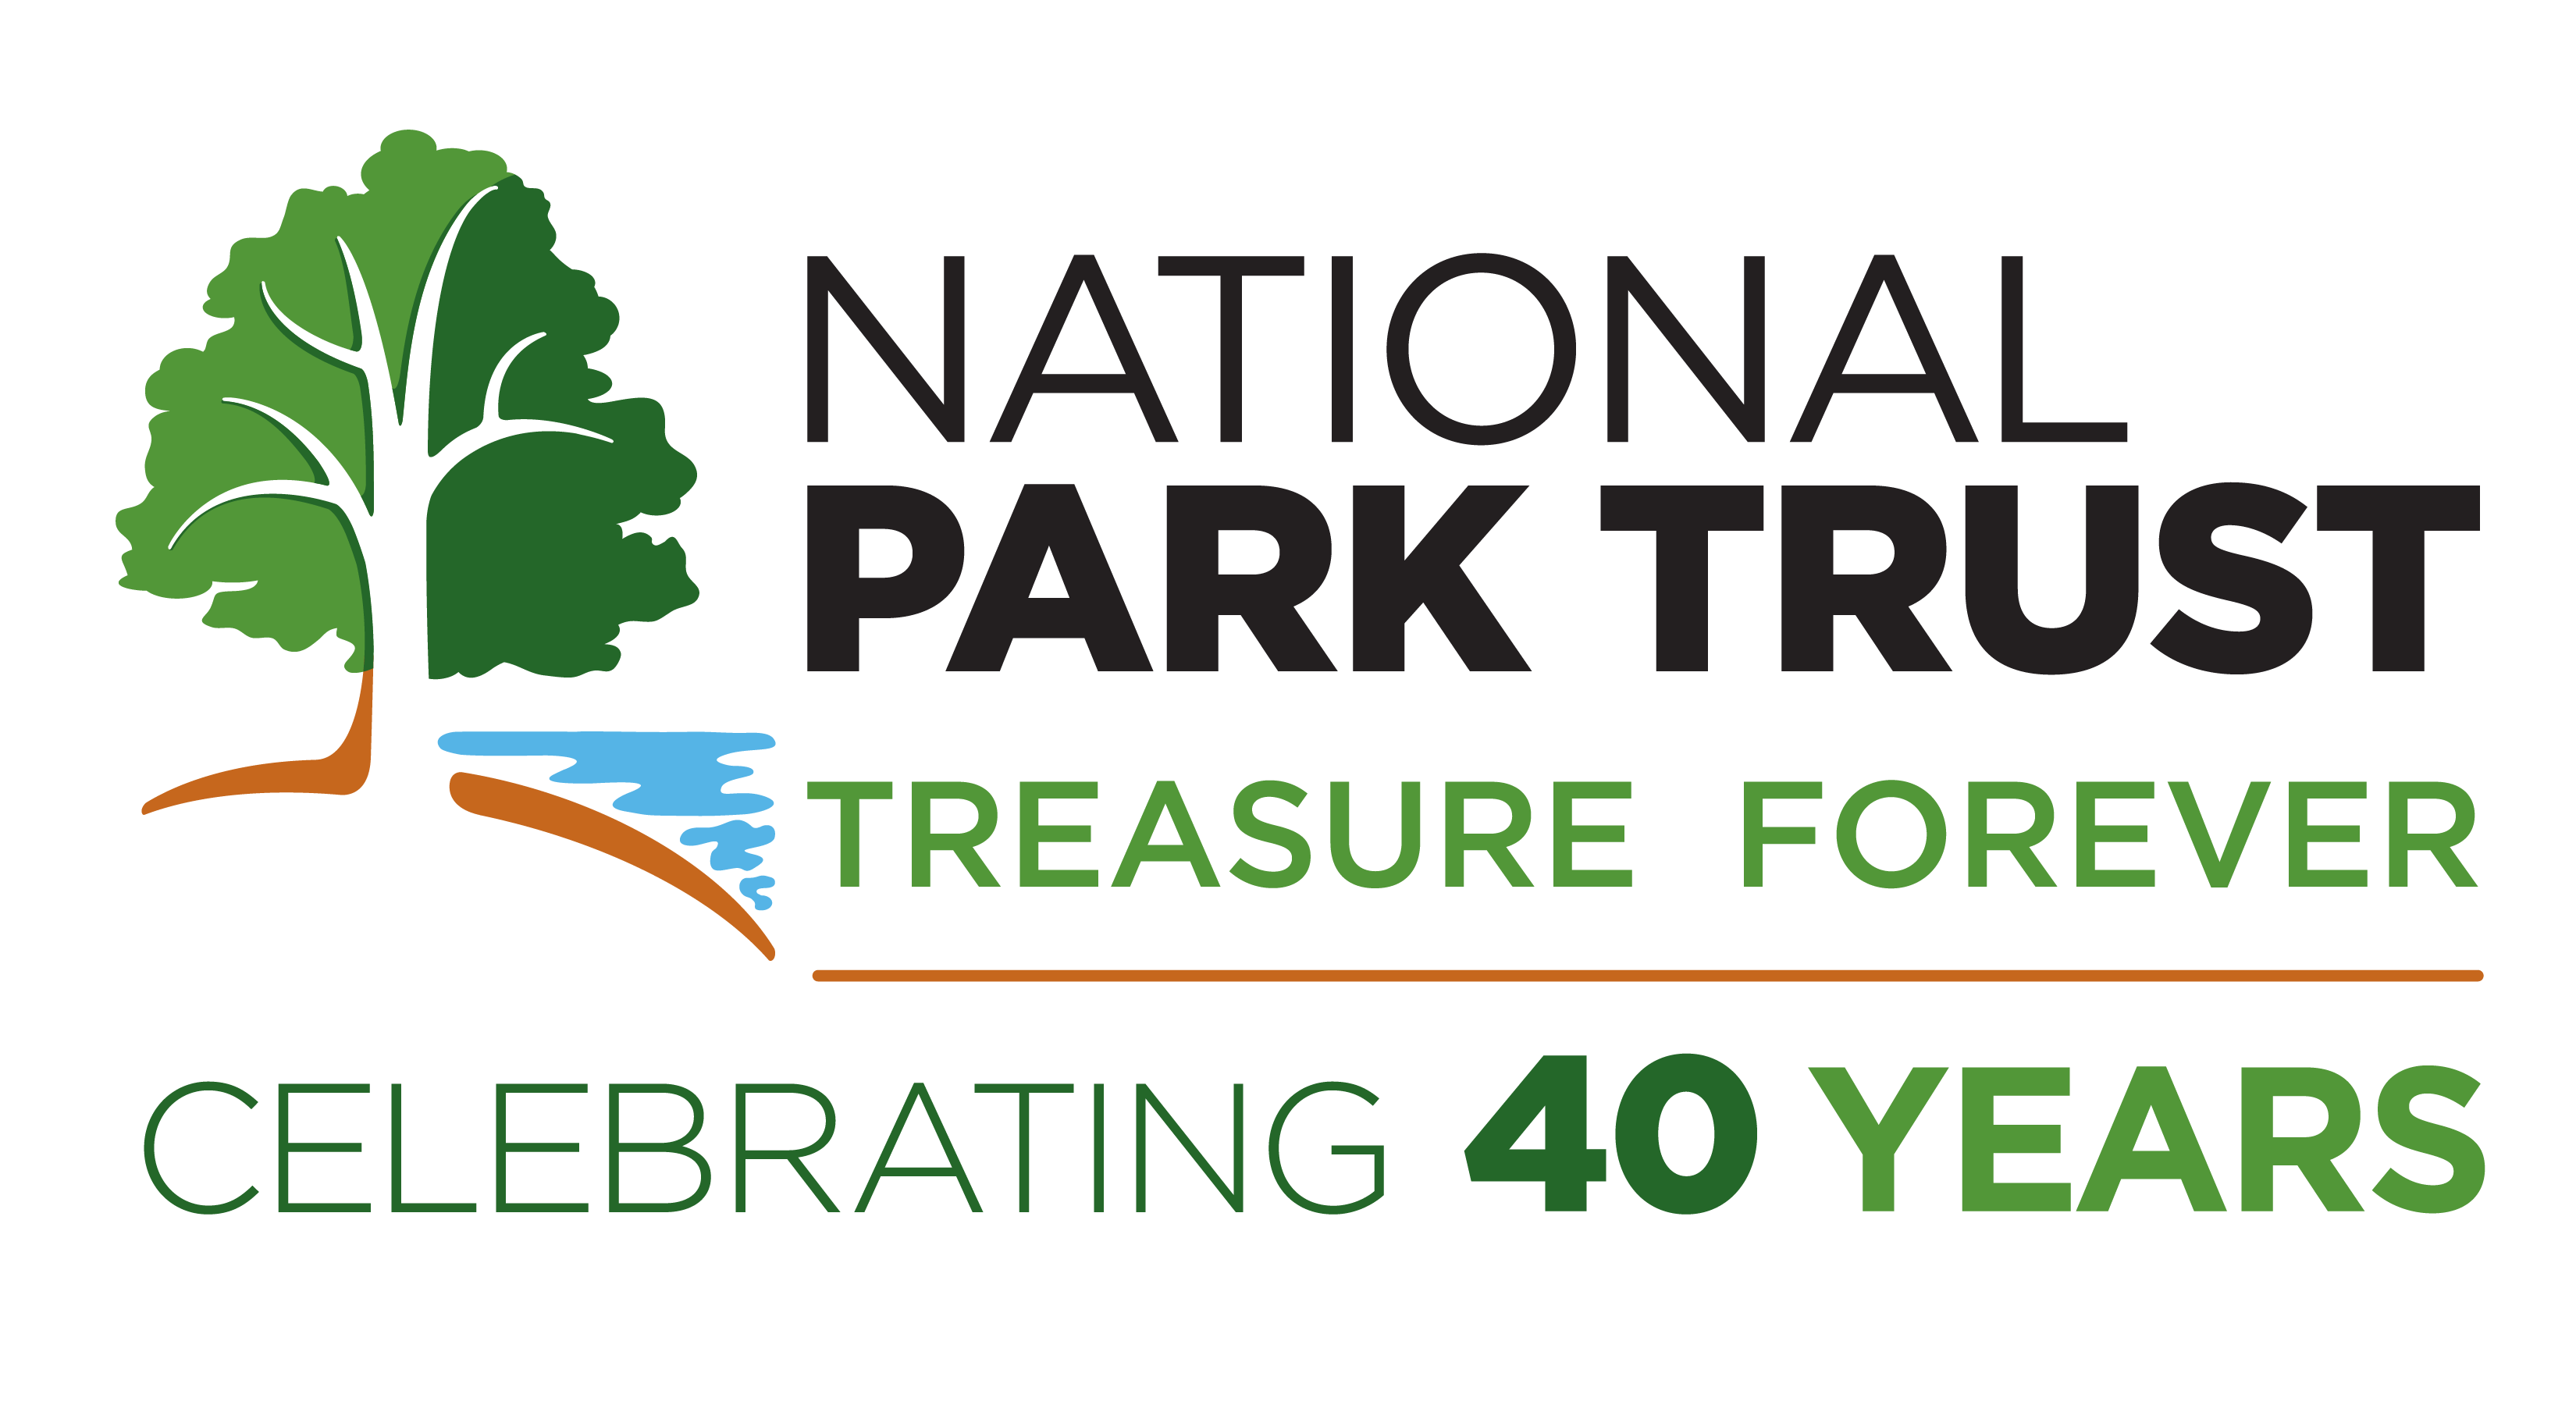 National Park Trust: Treasure Forever